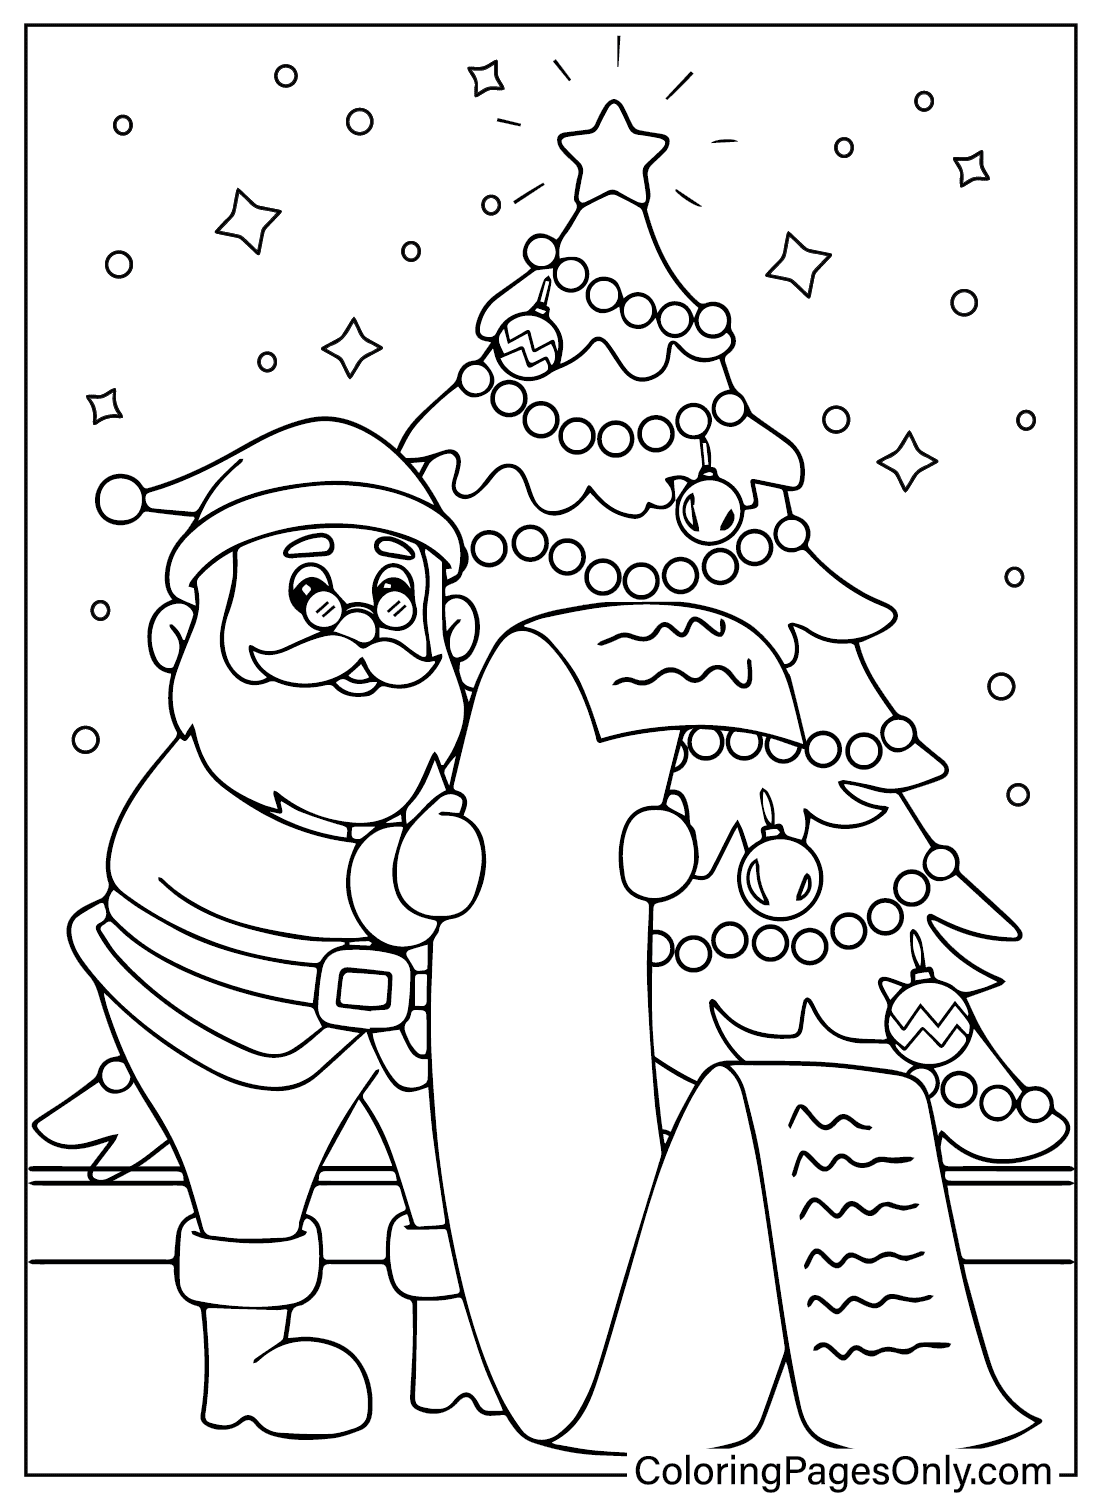 Santa Claus Coloring Page Printable from Santa Claus